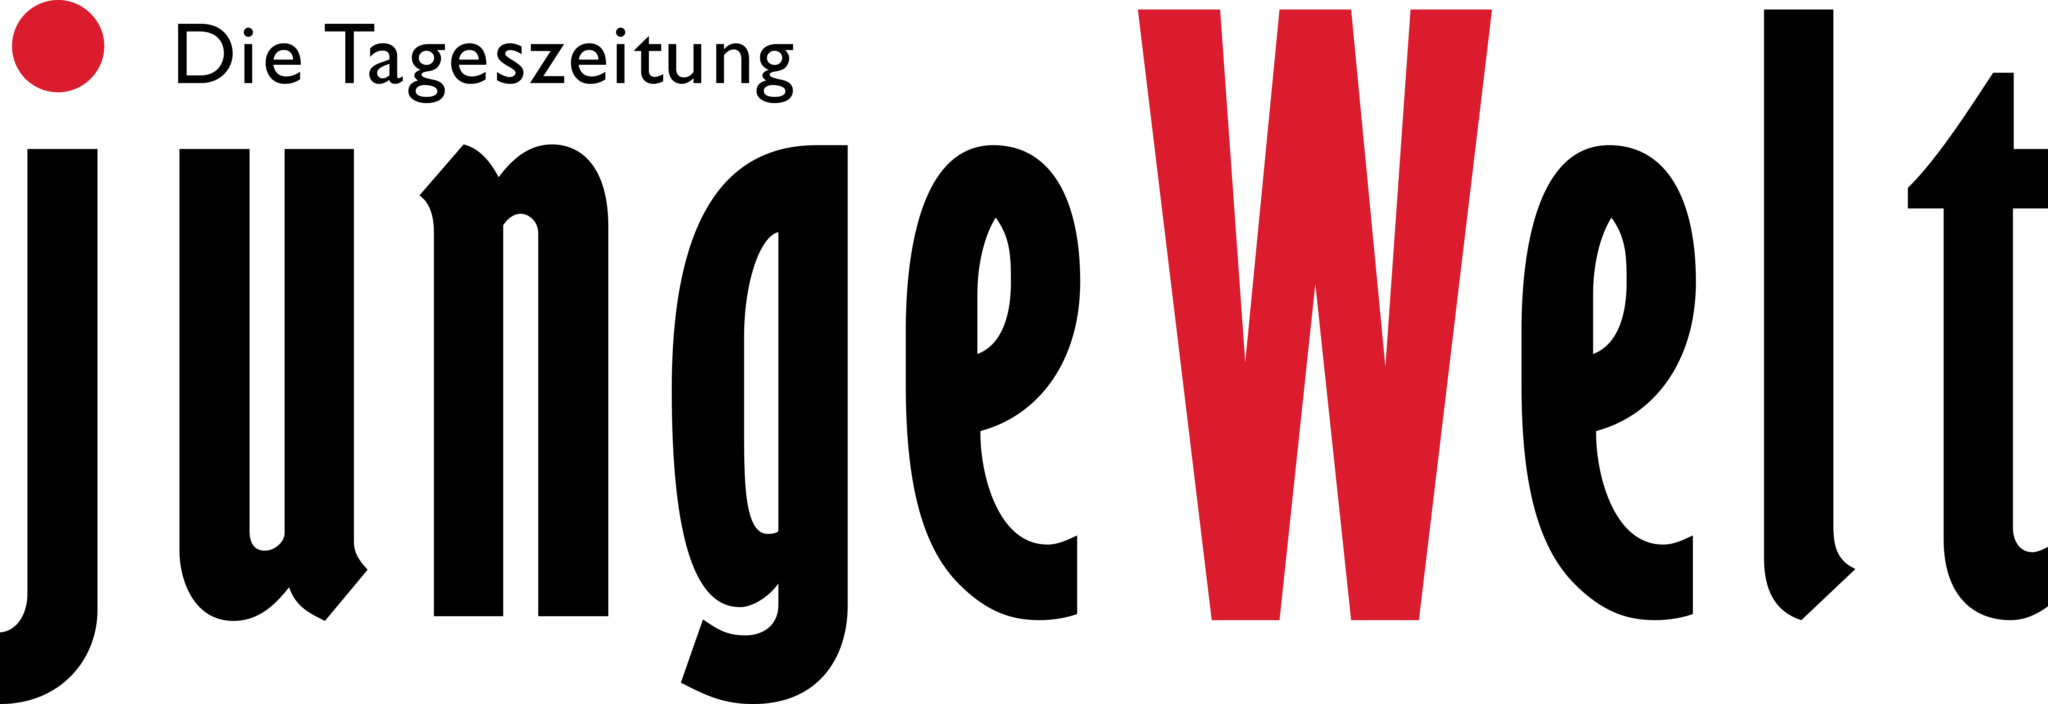 Junge Welt Logo full.